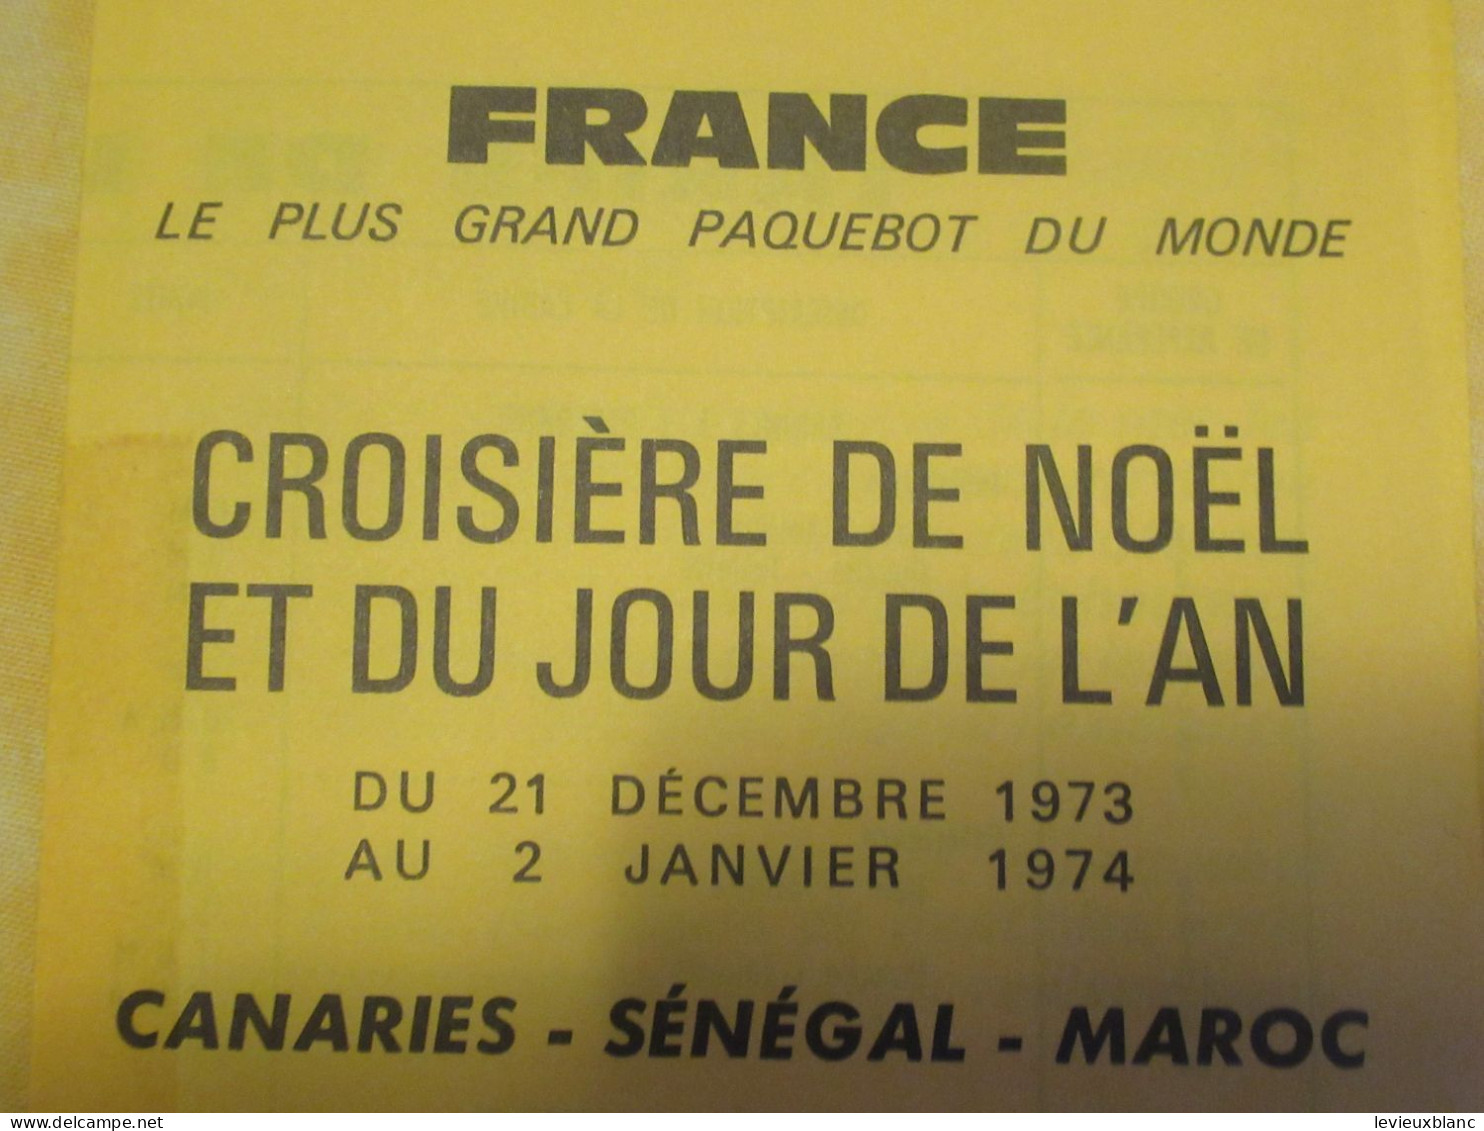 Marine/Transat/Croisière  Noël &  Jour De L'An/ Canaries-Sénégal-Maroc /Paquebot " FRANCE "/21 Déc 73 -2 Janv 74   DT174 - Toeristische Brochures